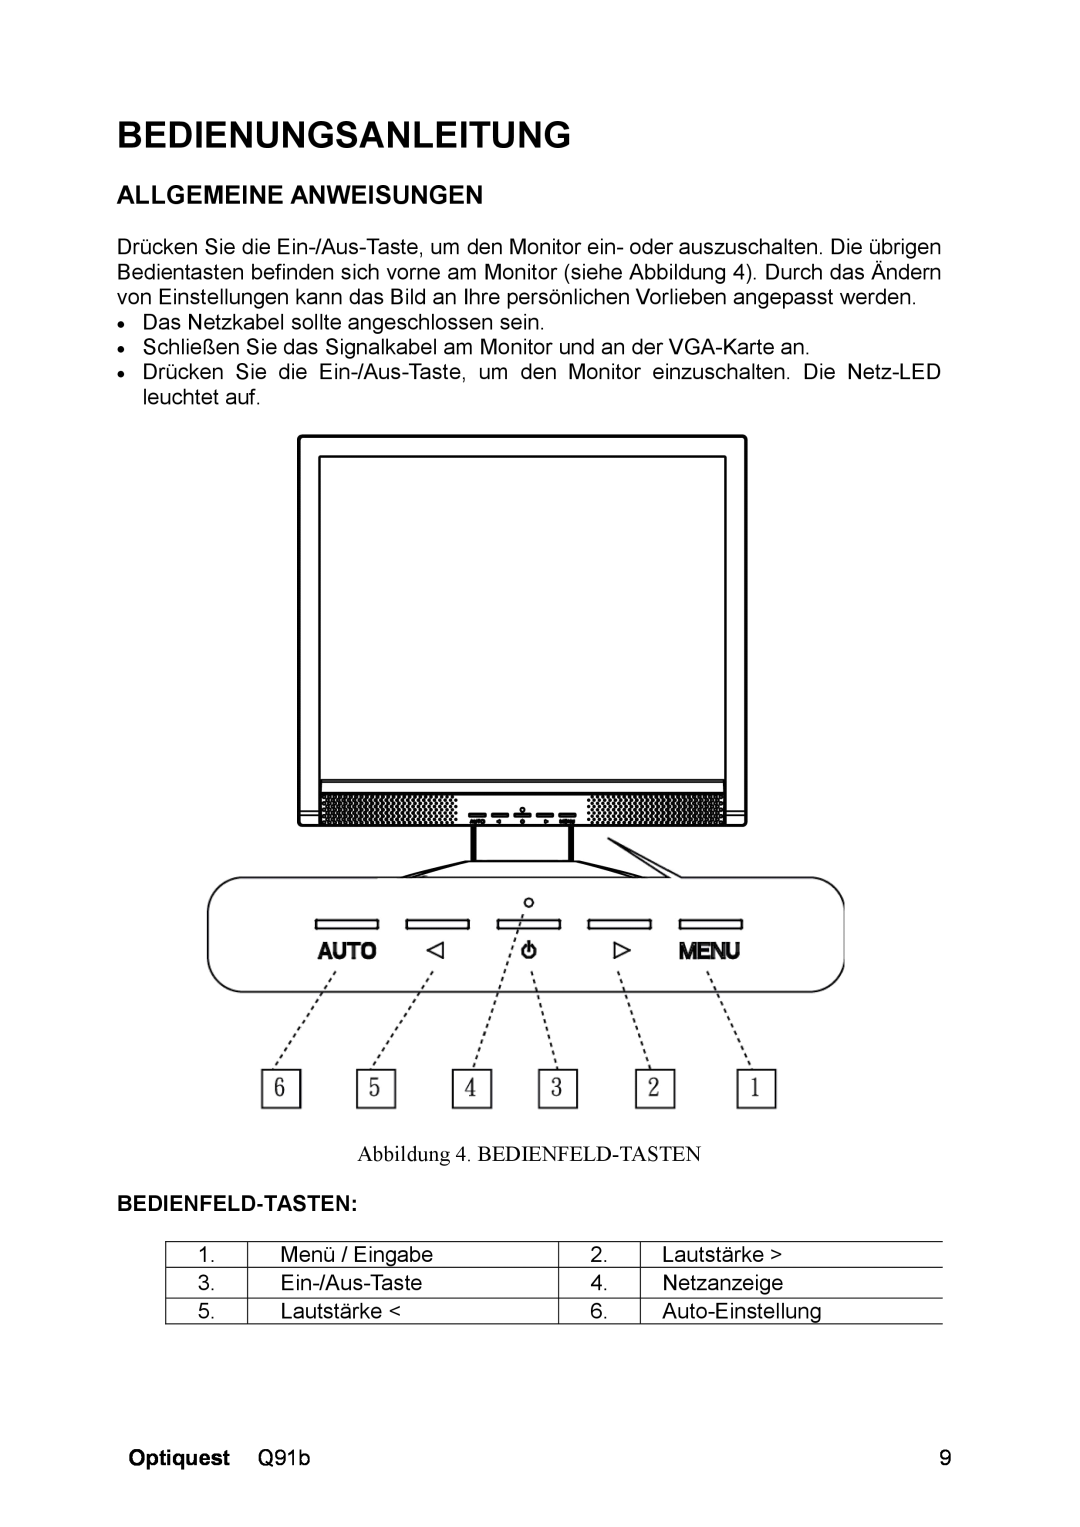 ViewSonic Q91B, VS12118 manual Bedienungsanleitung, Allgemeine Anweisungen, Bedienfeld-Tasten, Optiquest Q91b 